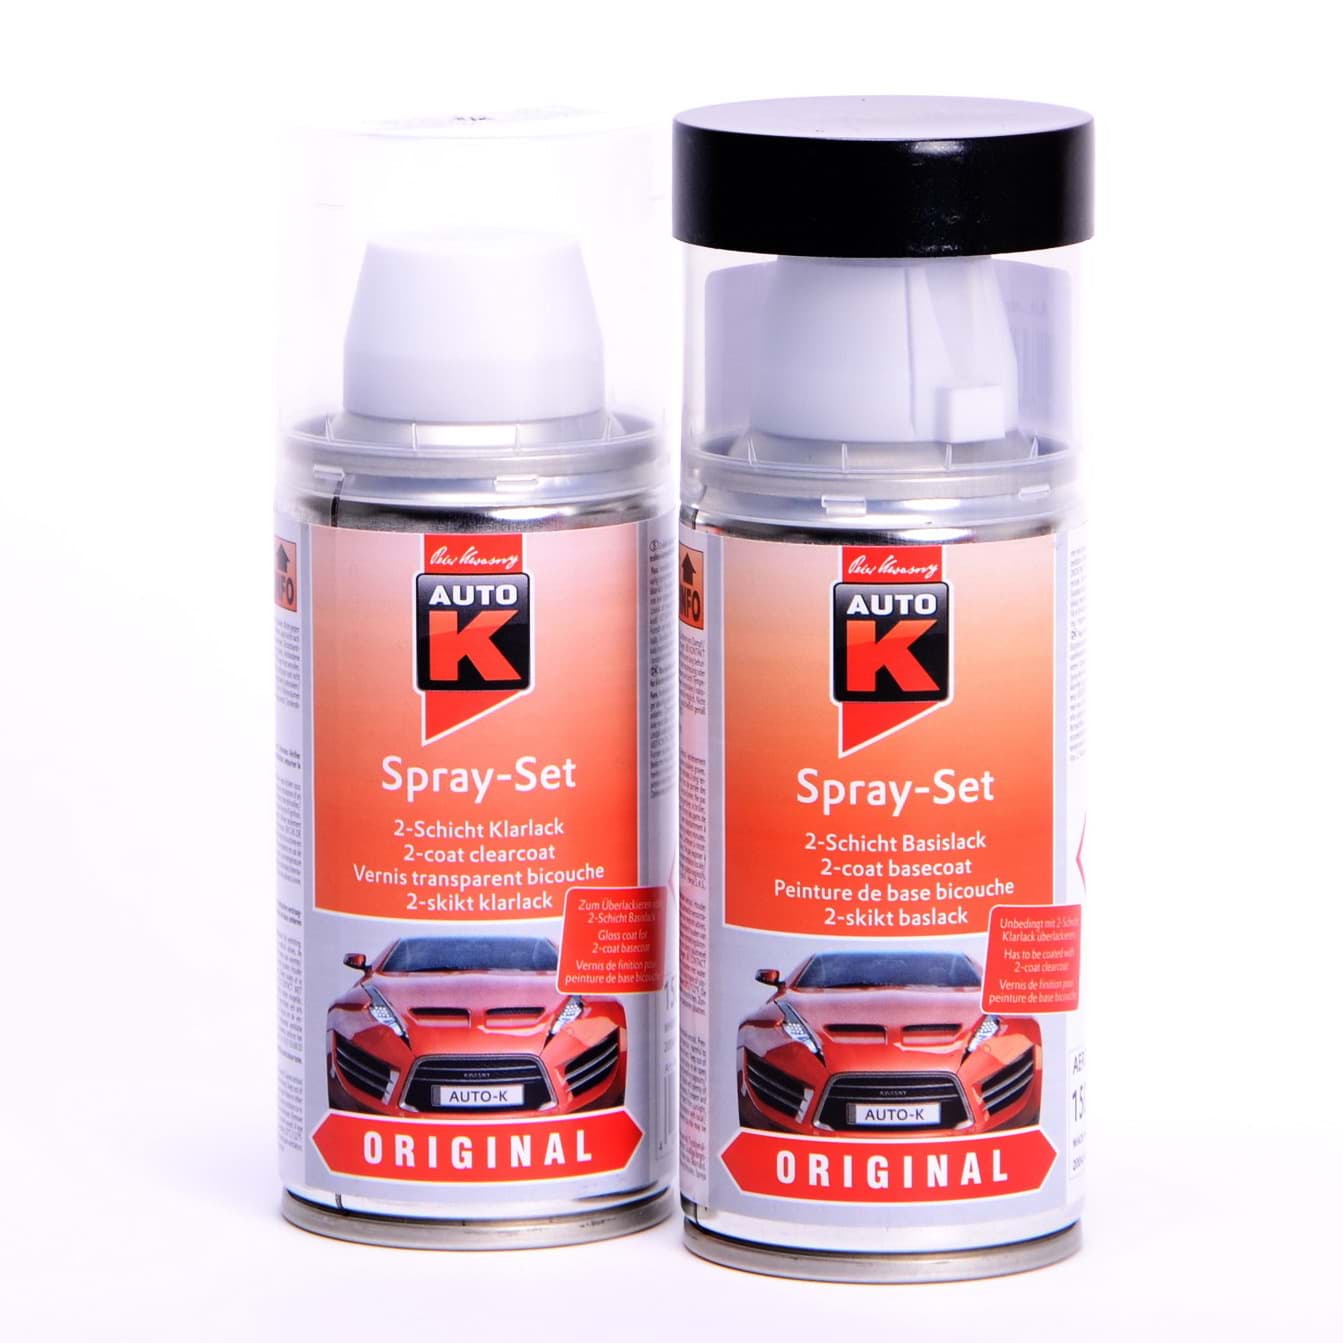 Auto-K Spray-Set Autolack für Renault 369 Blanc Glacier 43426 resmi